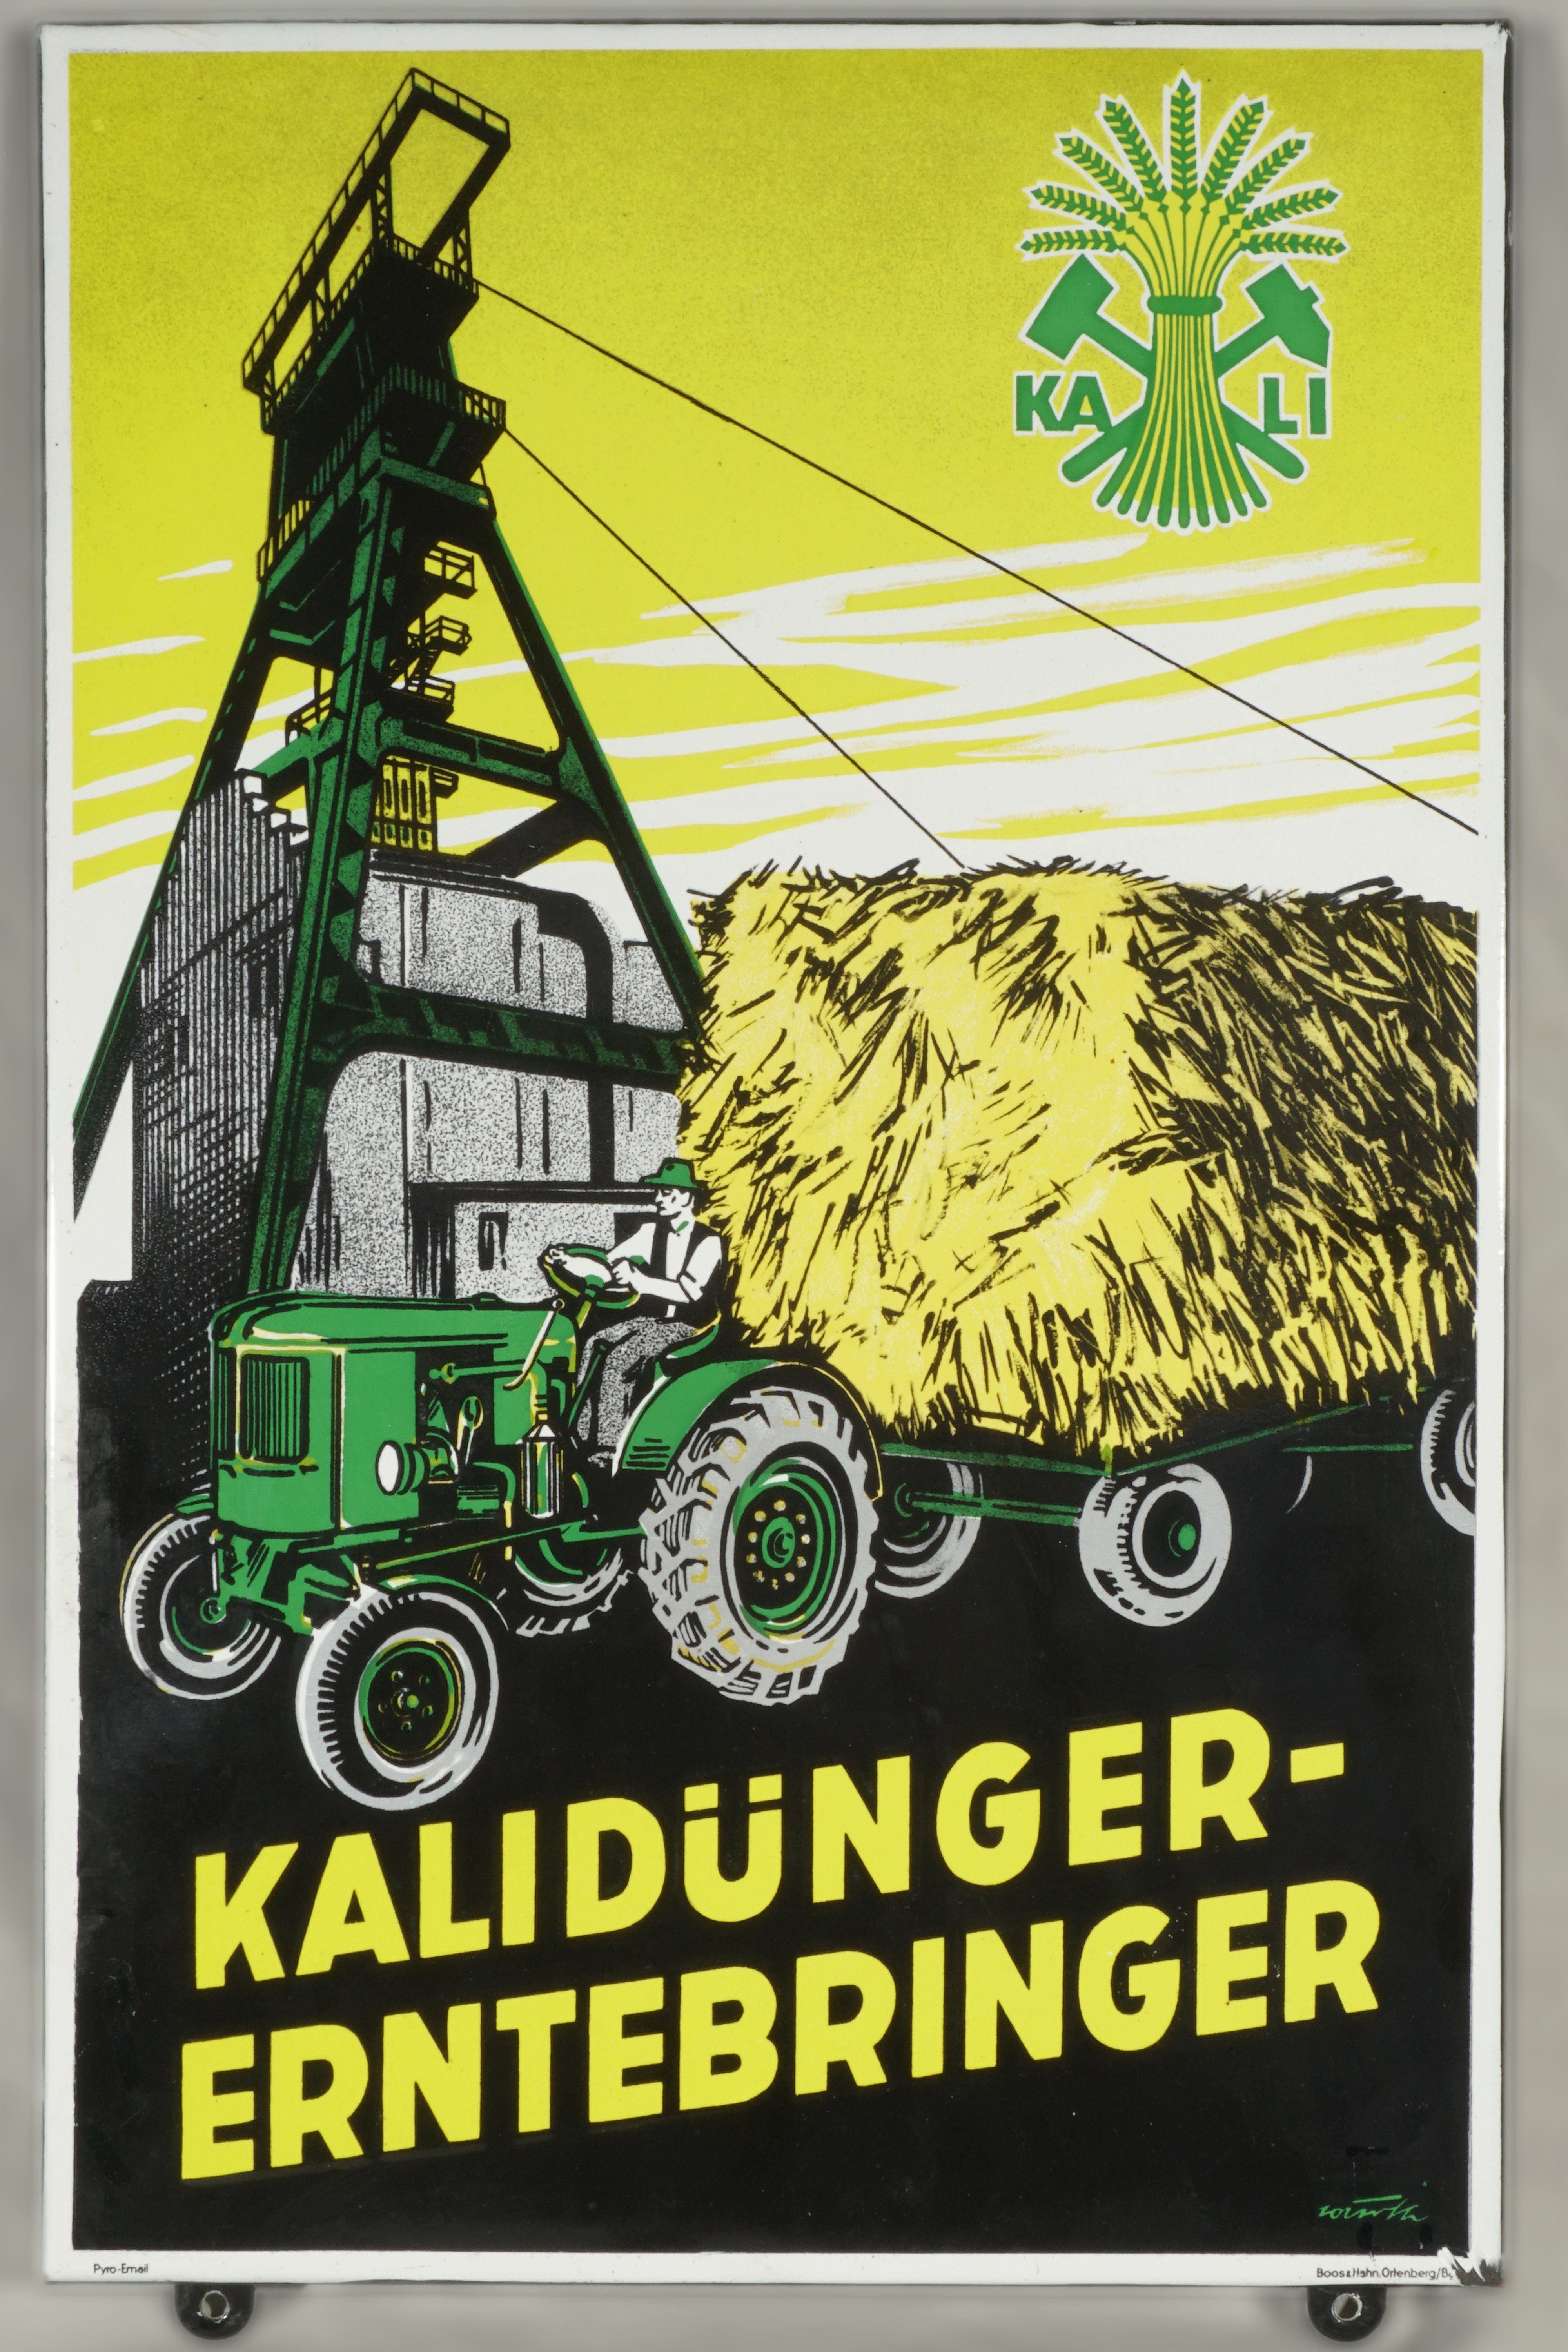 Emailleschild 'Kalidünger-Erntebringer' (Werra-Kalibergbau-Museum, Heringen/W. CC BY-NC-SA)